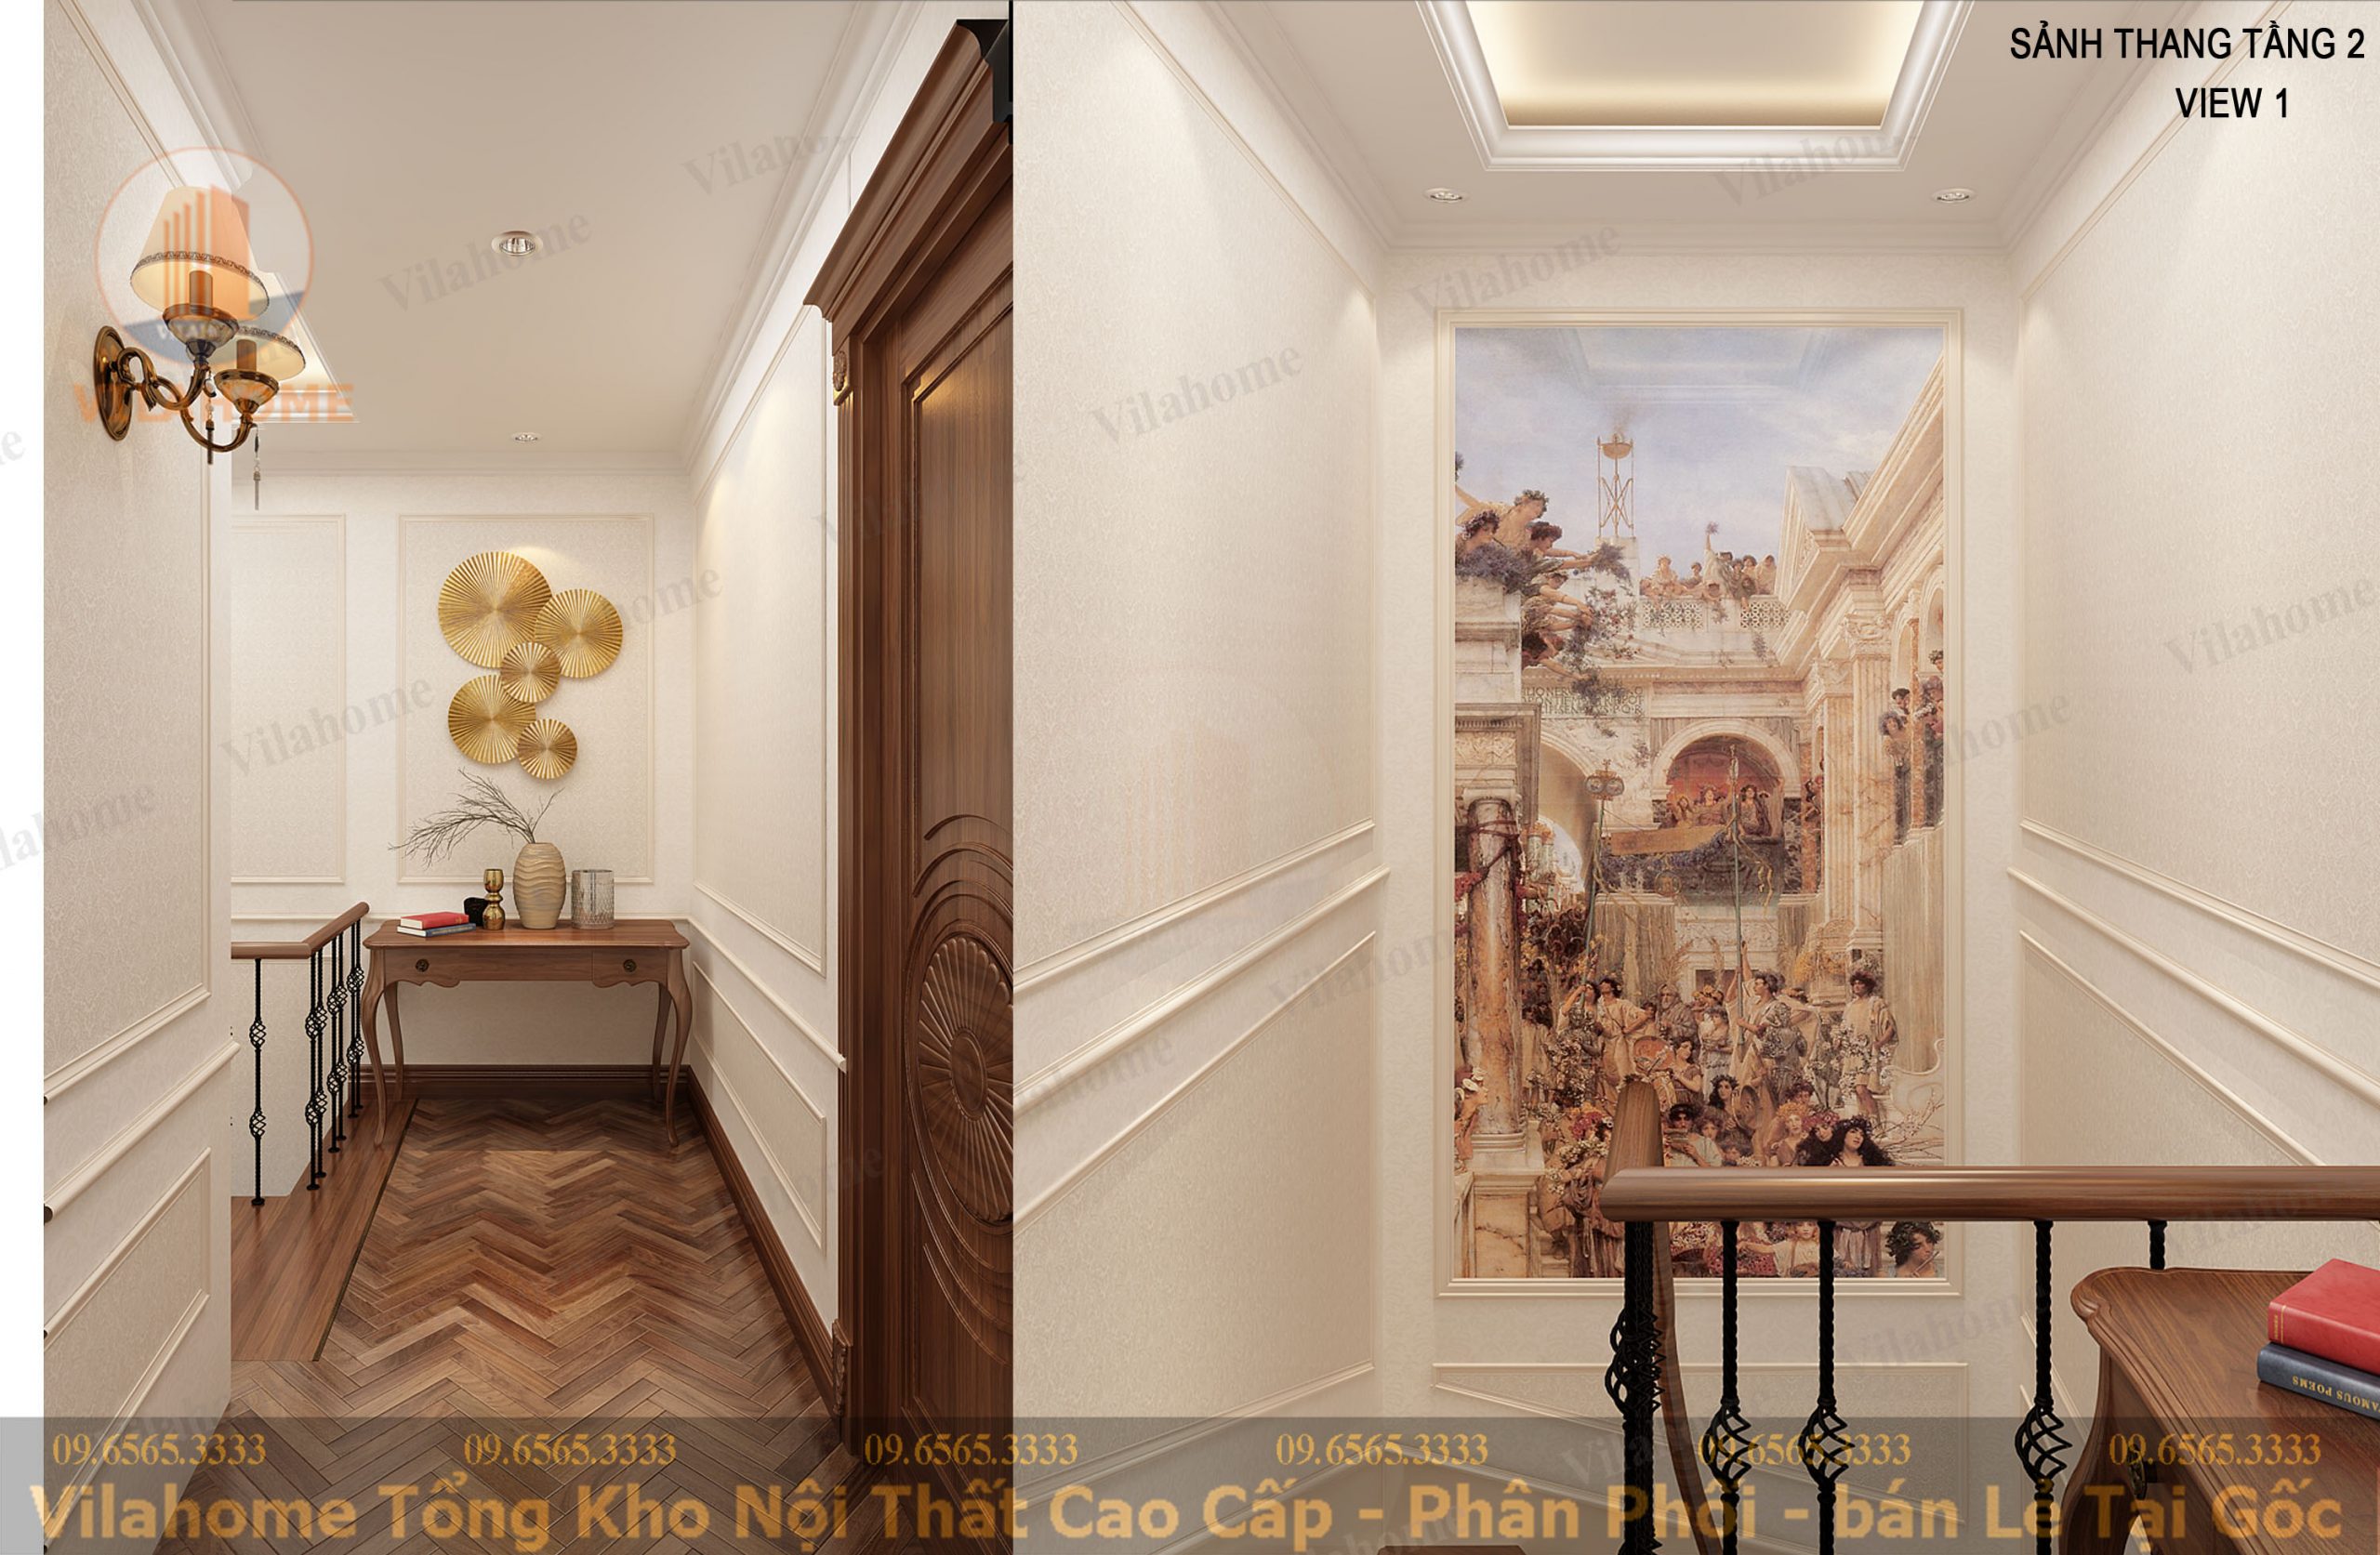 Trang trí hành lang tân cổ điển, sảnh thang tân cổ điển với tranh treo tường đẹp, giá tốt